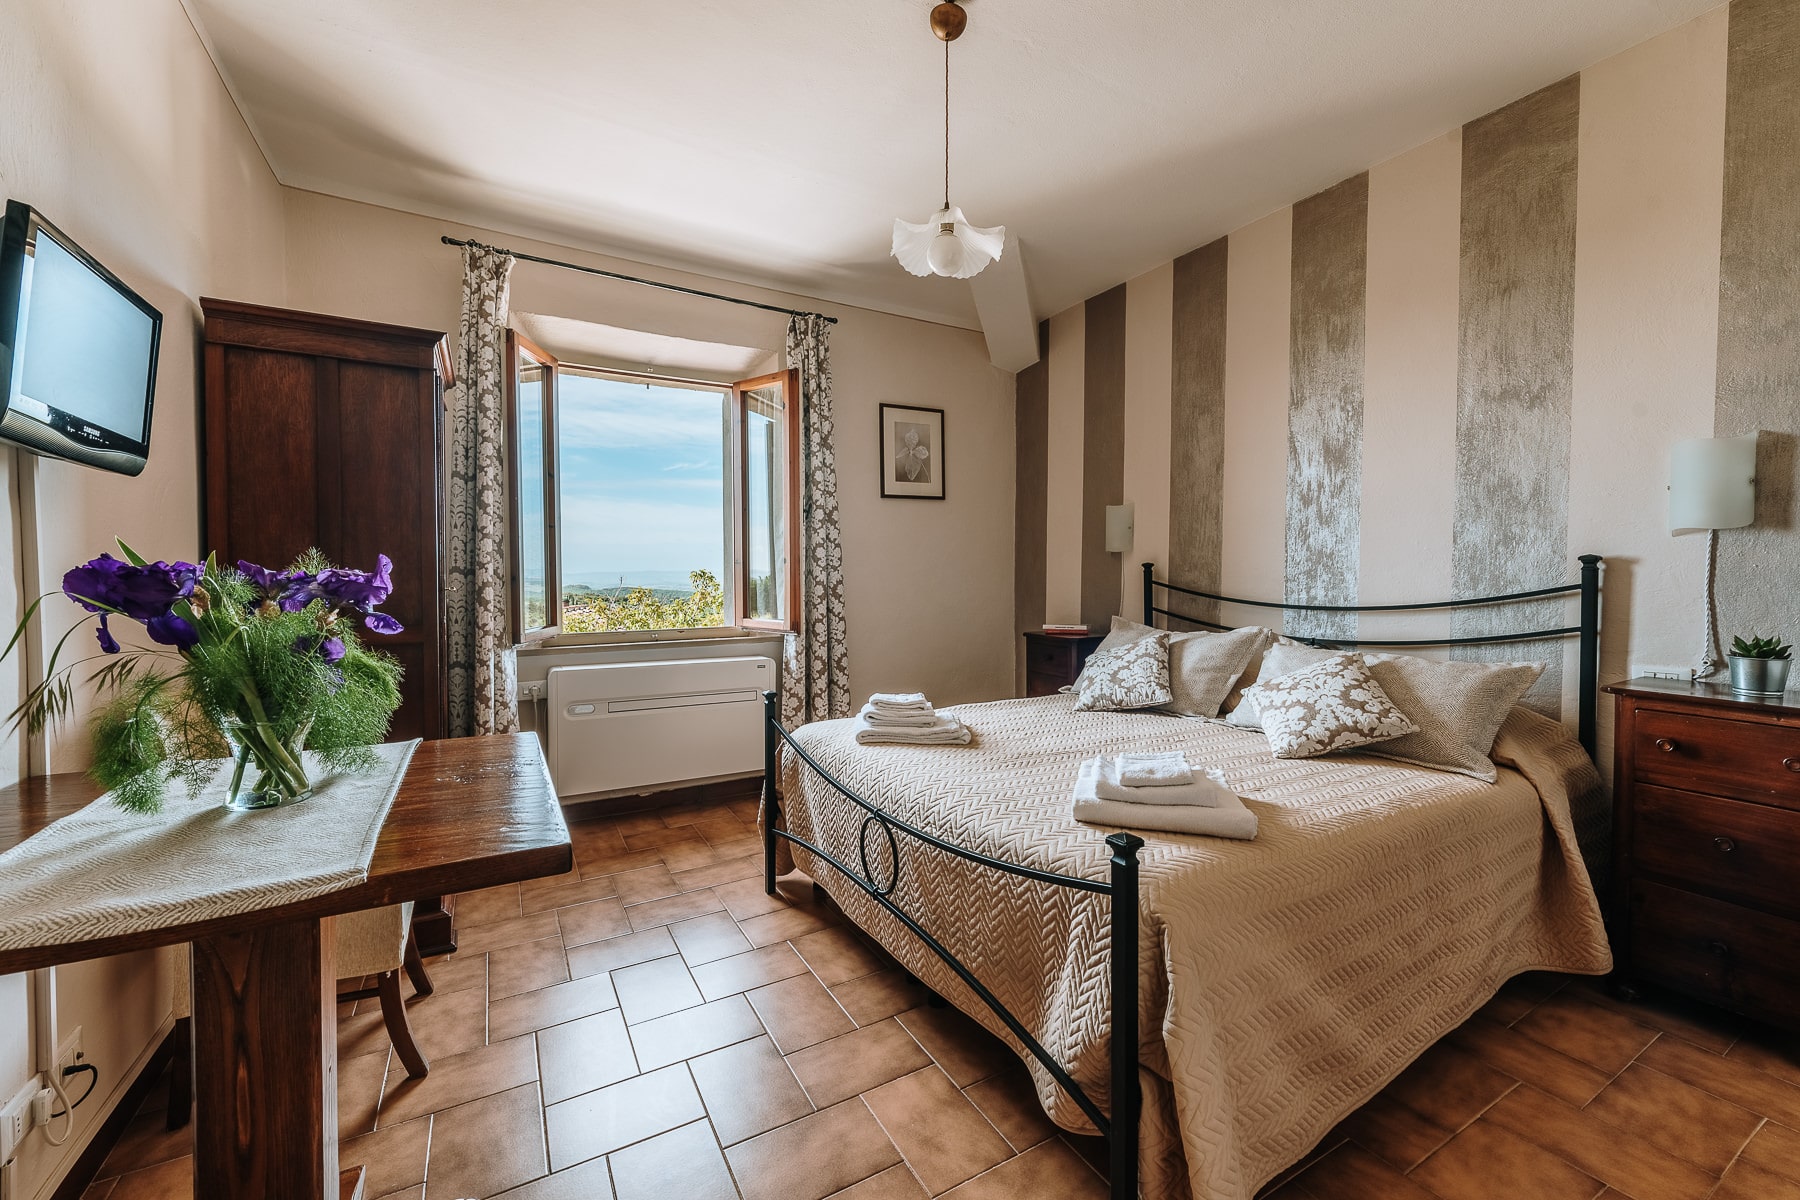 Chambres- Bed and Breakfast Villa di Sotto